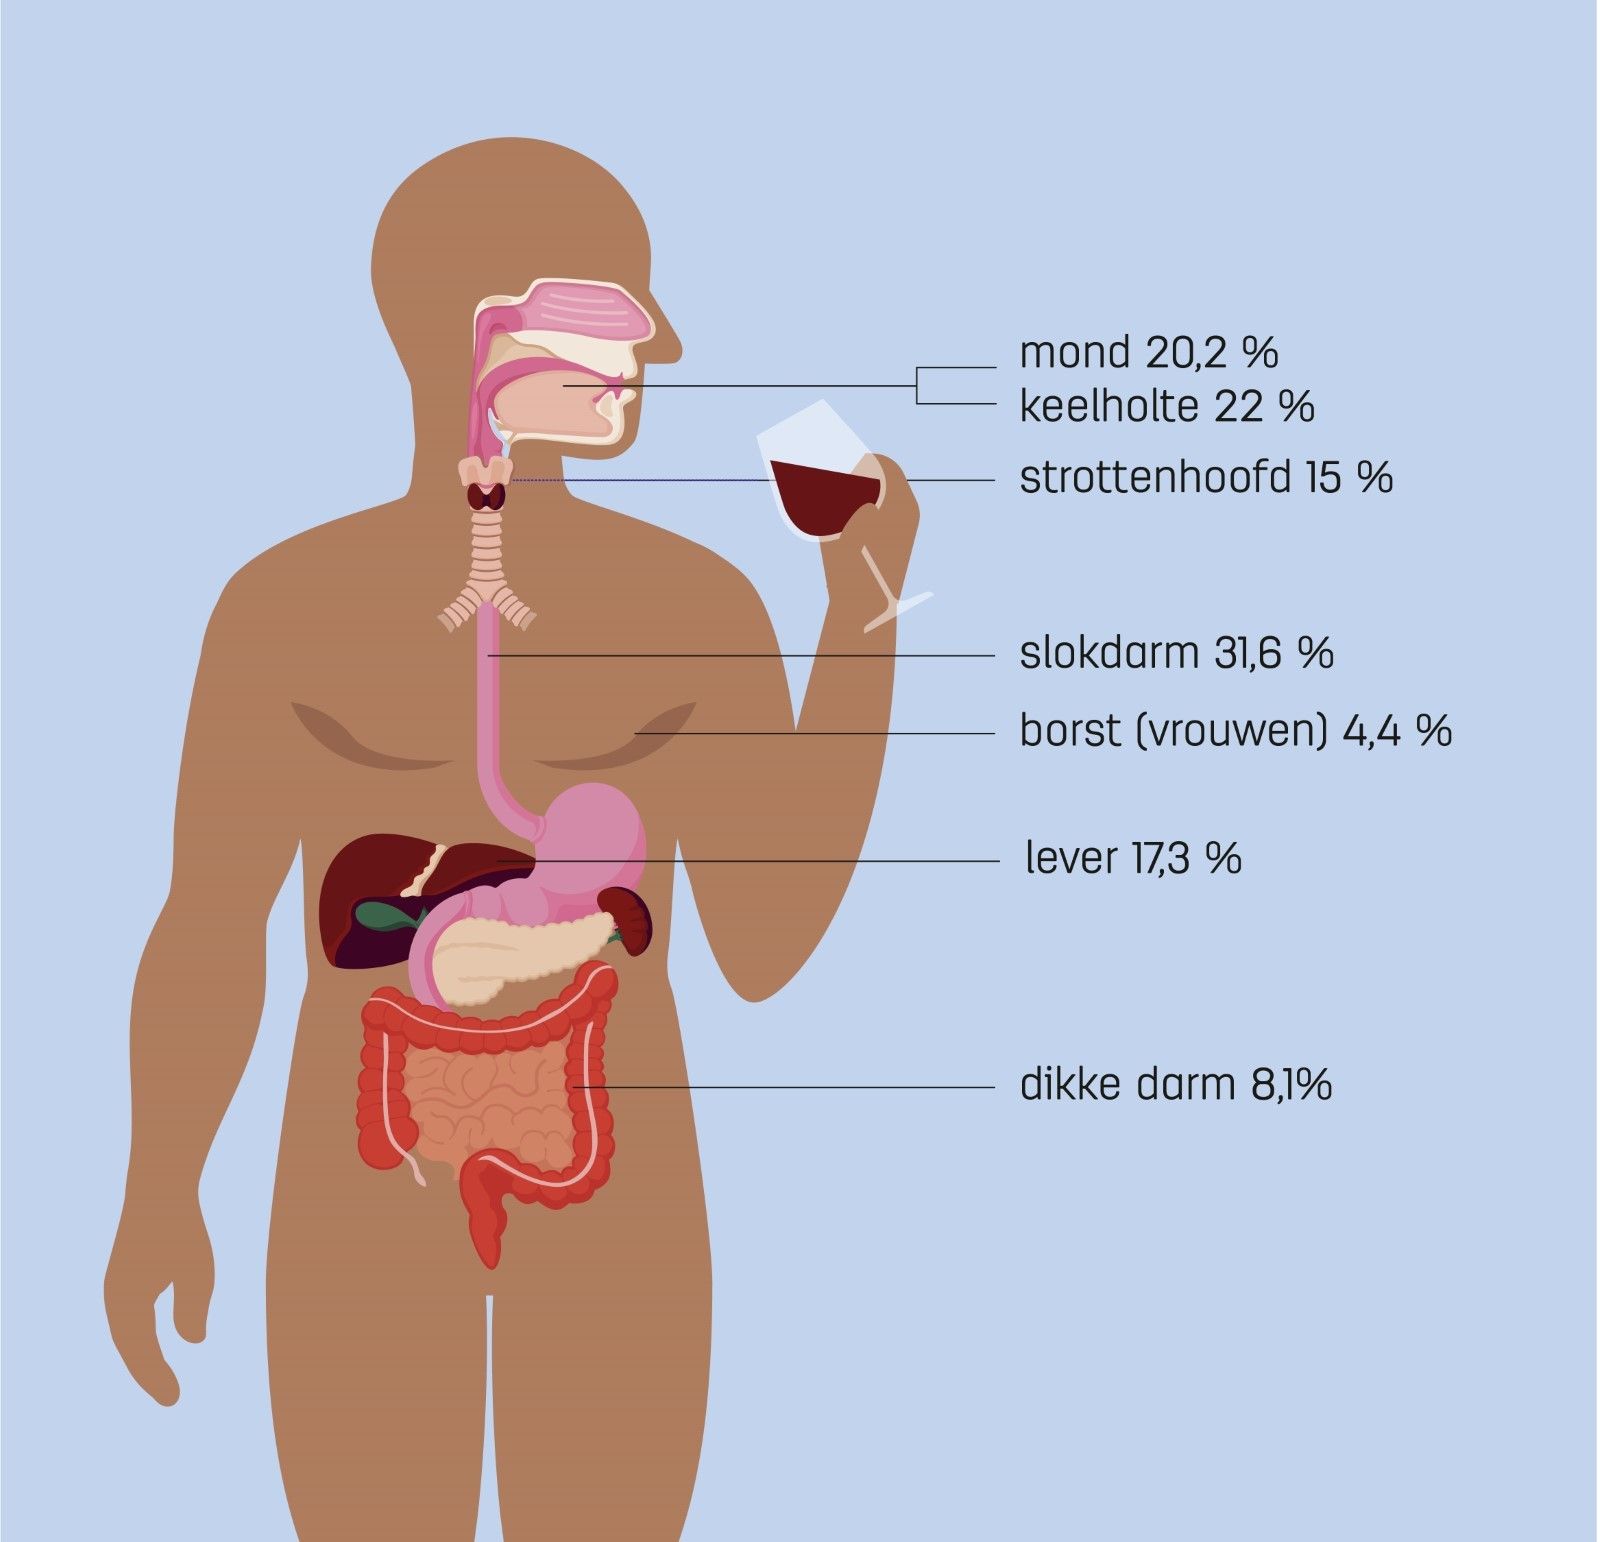 Percentage per type kanker dat veroorzaakt wordt door alcohol. ​
Gebaseerd op: Rumgay H, Shield K, Charvat H, et al. Global burden of cancer in 2020 attributable to alcohol consumption: a population-based study. Lancet Oncol. 2021; 22: 1071-1080.